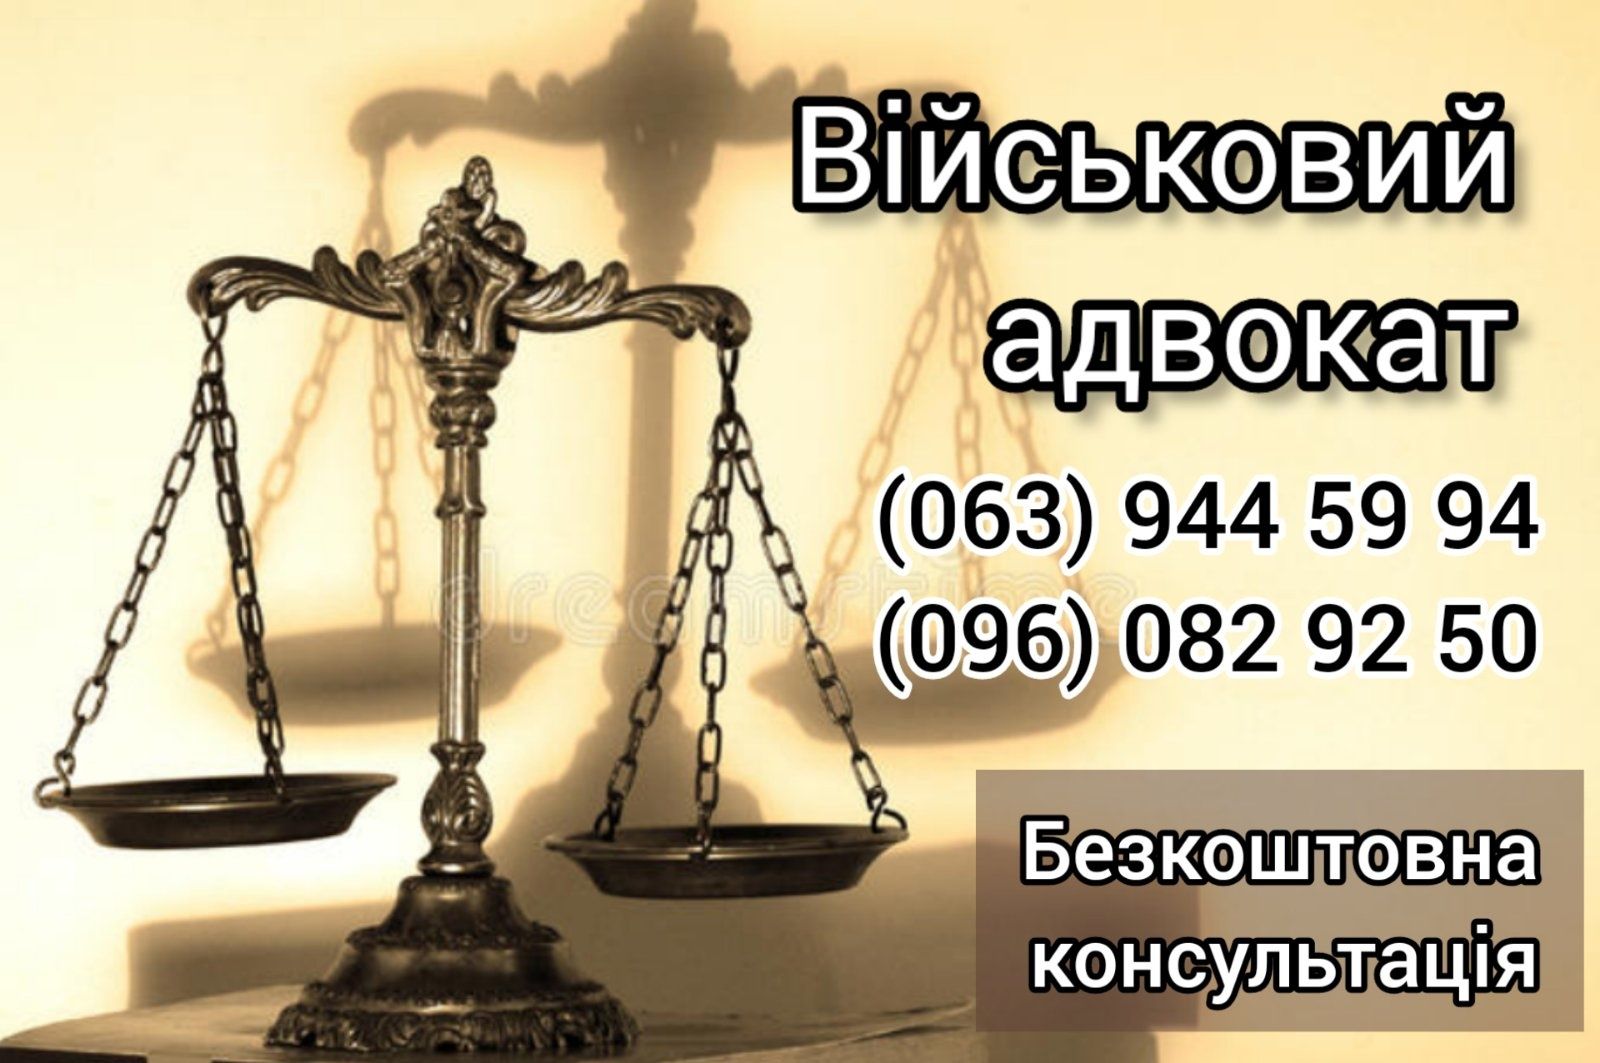 Услуги военного адвоката в Запорожье. Военный юрист - консультации